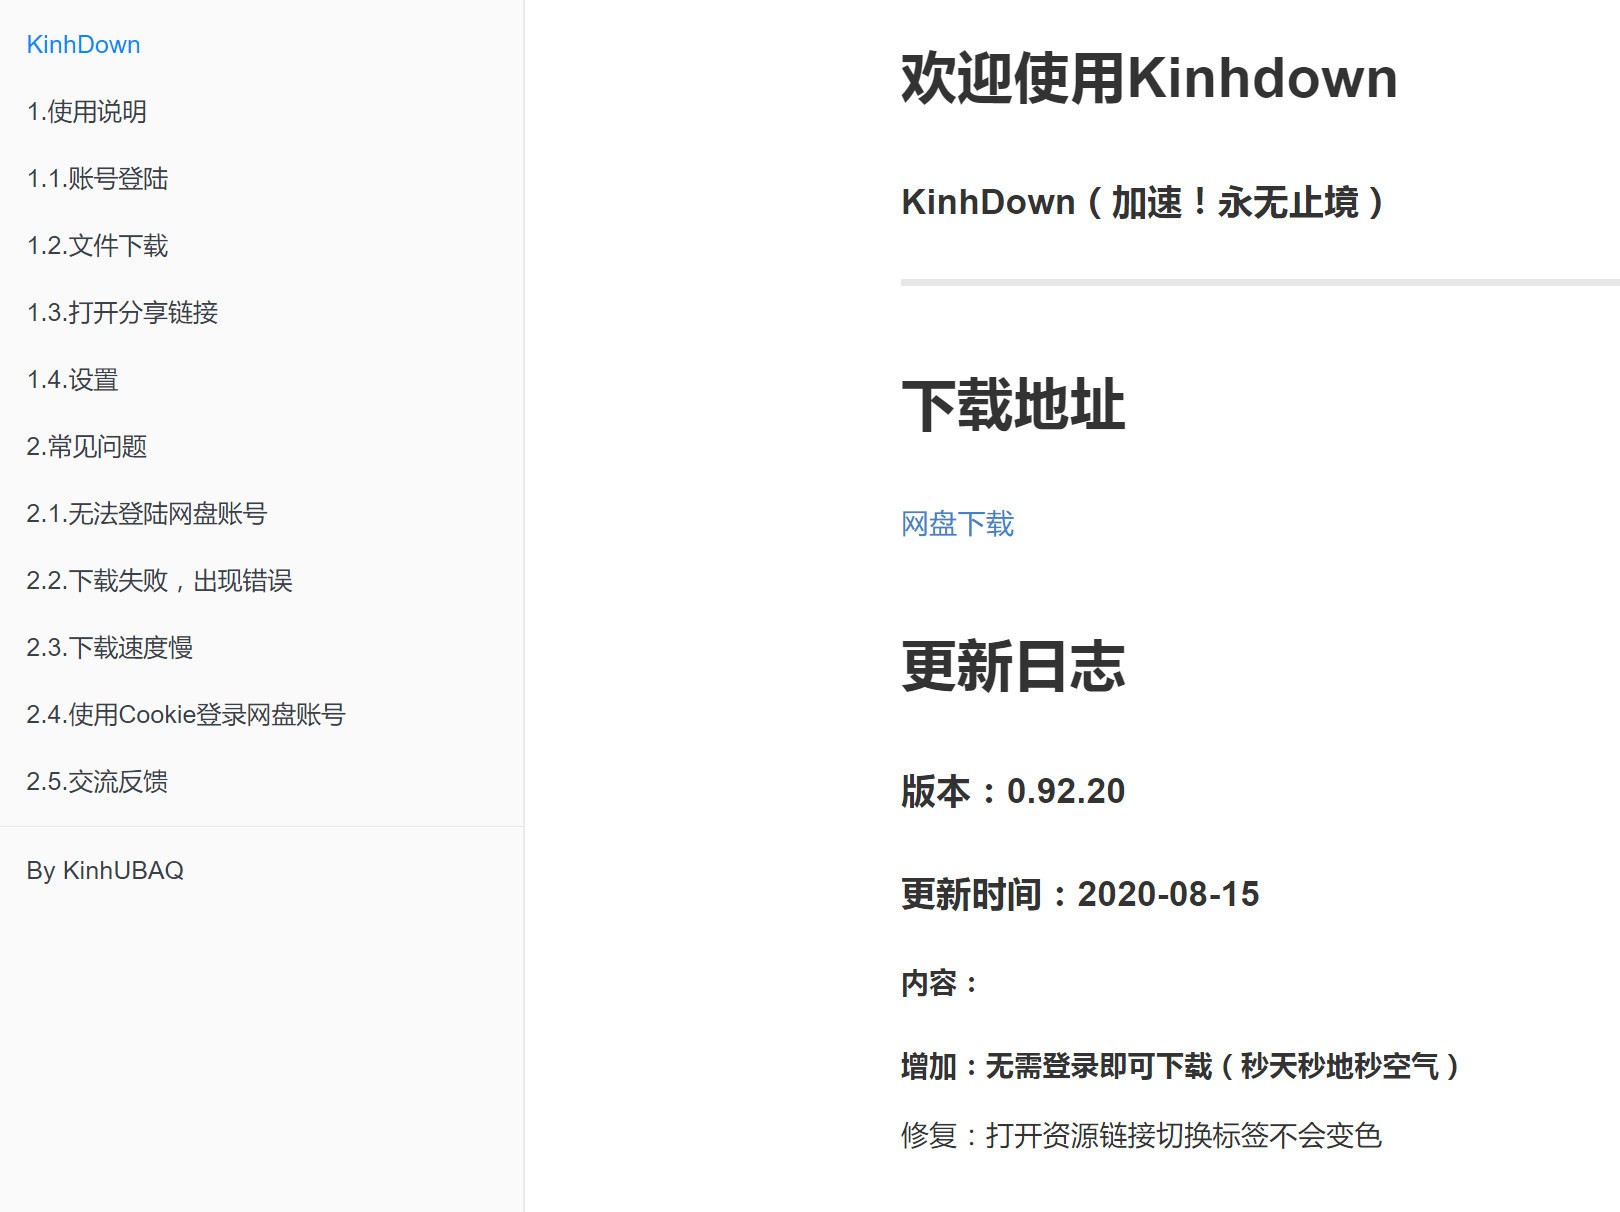 百度网盘新下载工具Kinhdown+Pandownload修改版复活-PK技术网